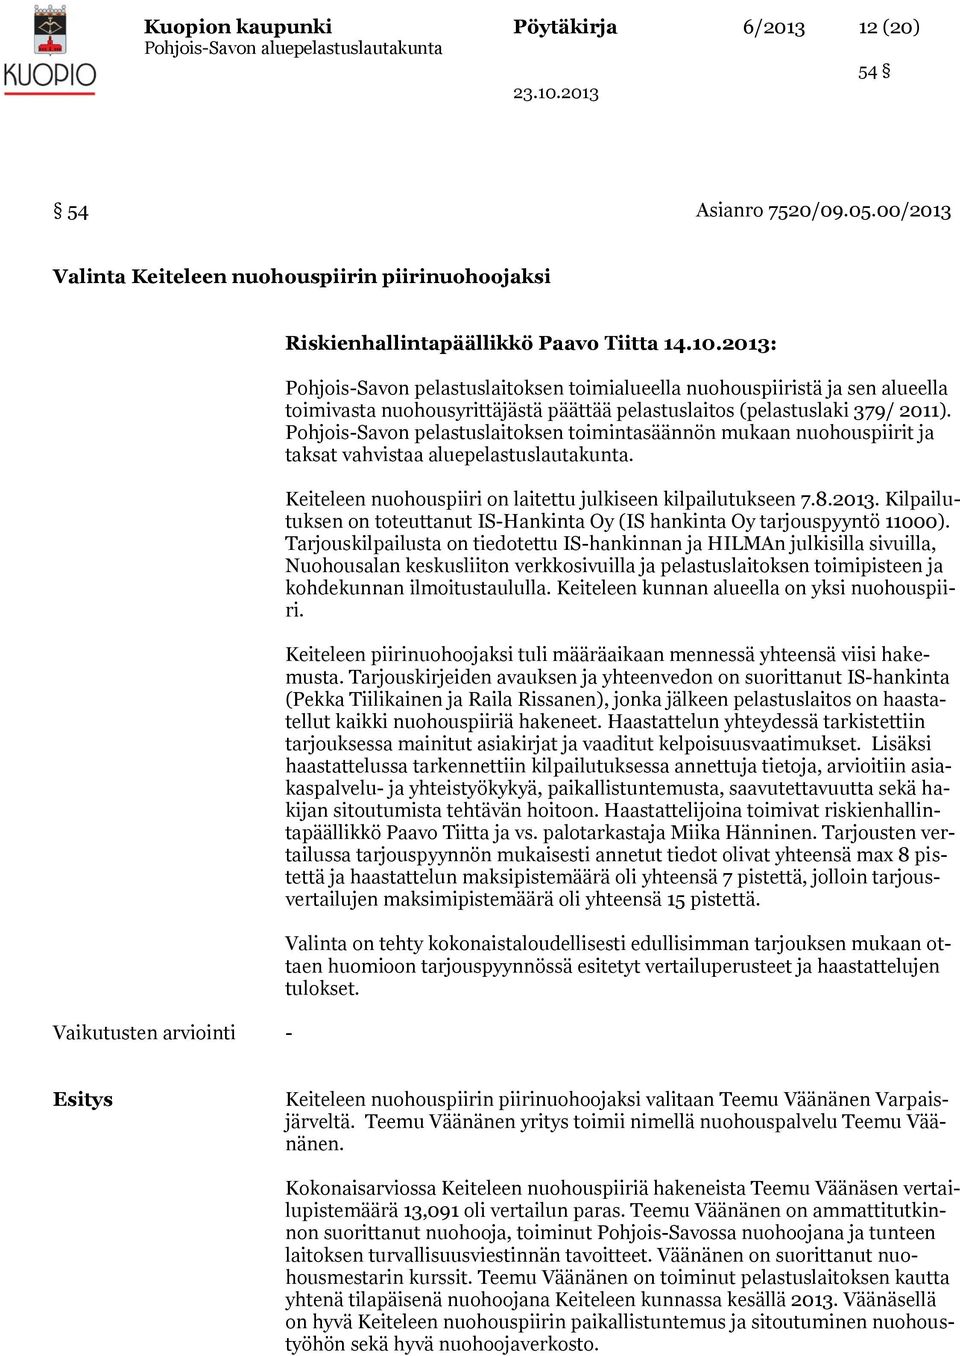 Pohjois-Savon pelastuslaitoksen toimintasäännön mukaan nuohouspiirit ja taksat vahvistaa aluepelastuslautakunta. Keiteleen nuohouspiiri on laitettu julkiseen kilpailutukseen 7.8.2013.